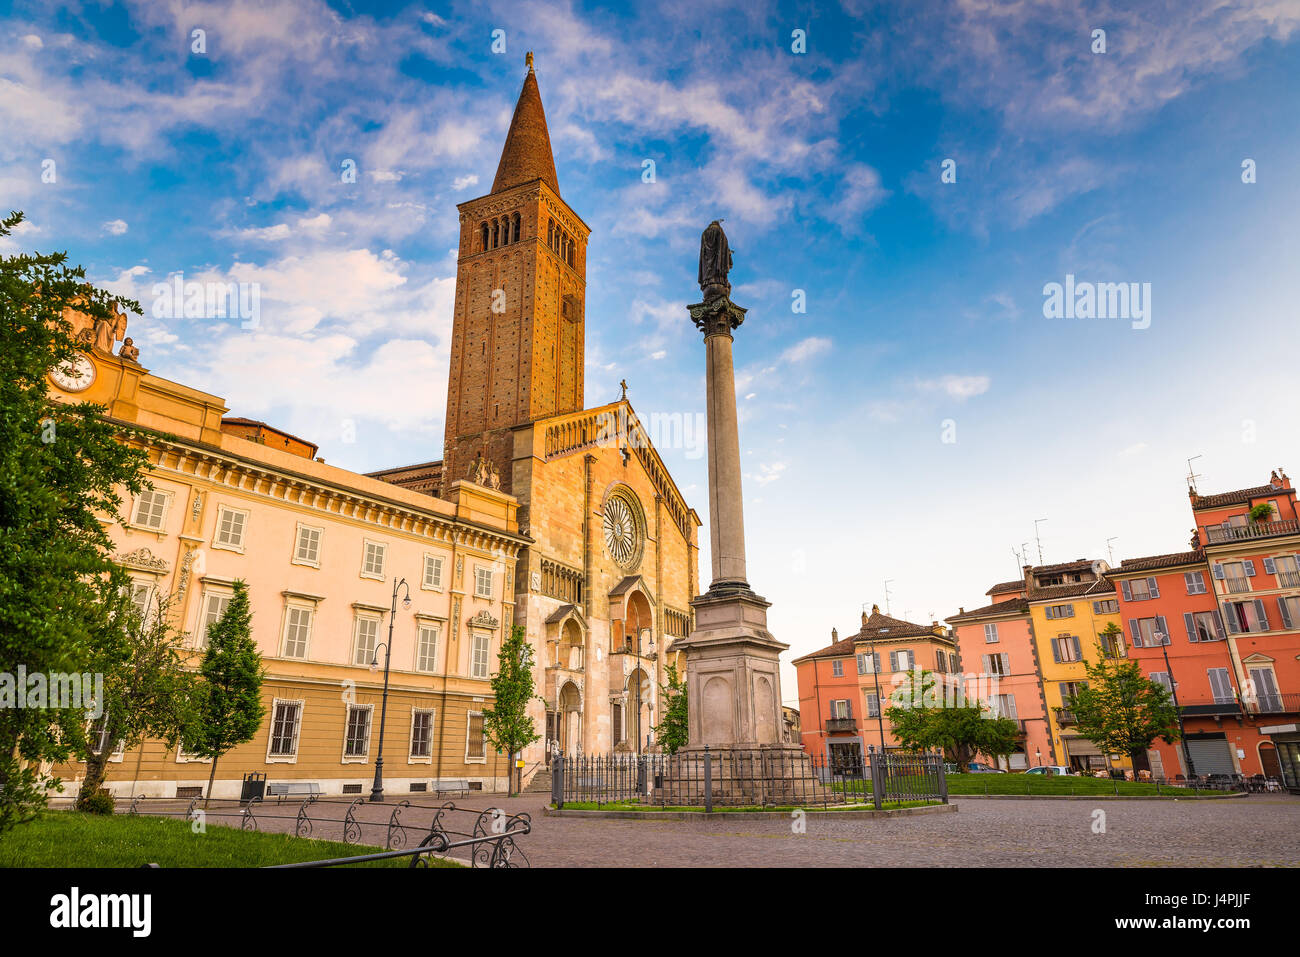 Piacenza, ville médiévale, en Italie. La Piazza Duomo, dans le centre-ville avec la cathédrale de Santa Maria Assunta et Santa Giustina, lumière chaude au coucher du soleil. Banque D'Images